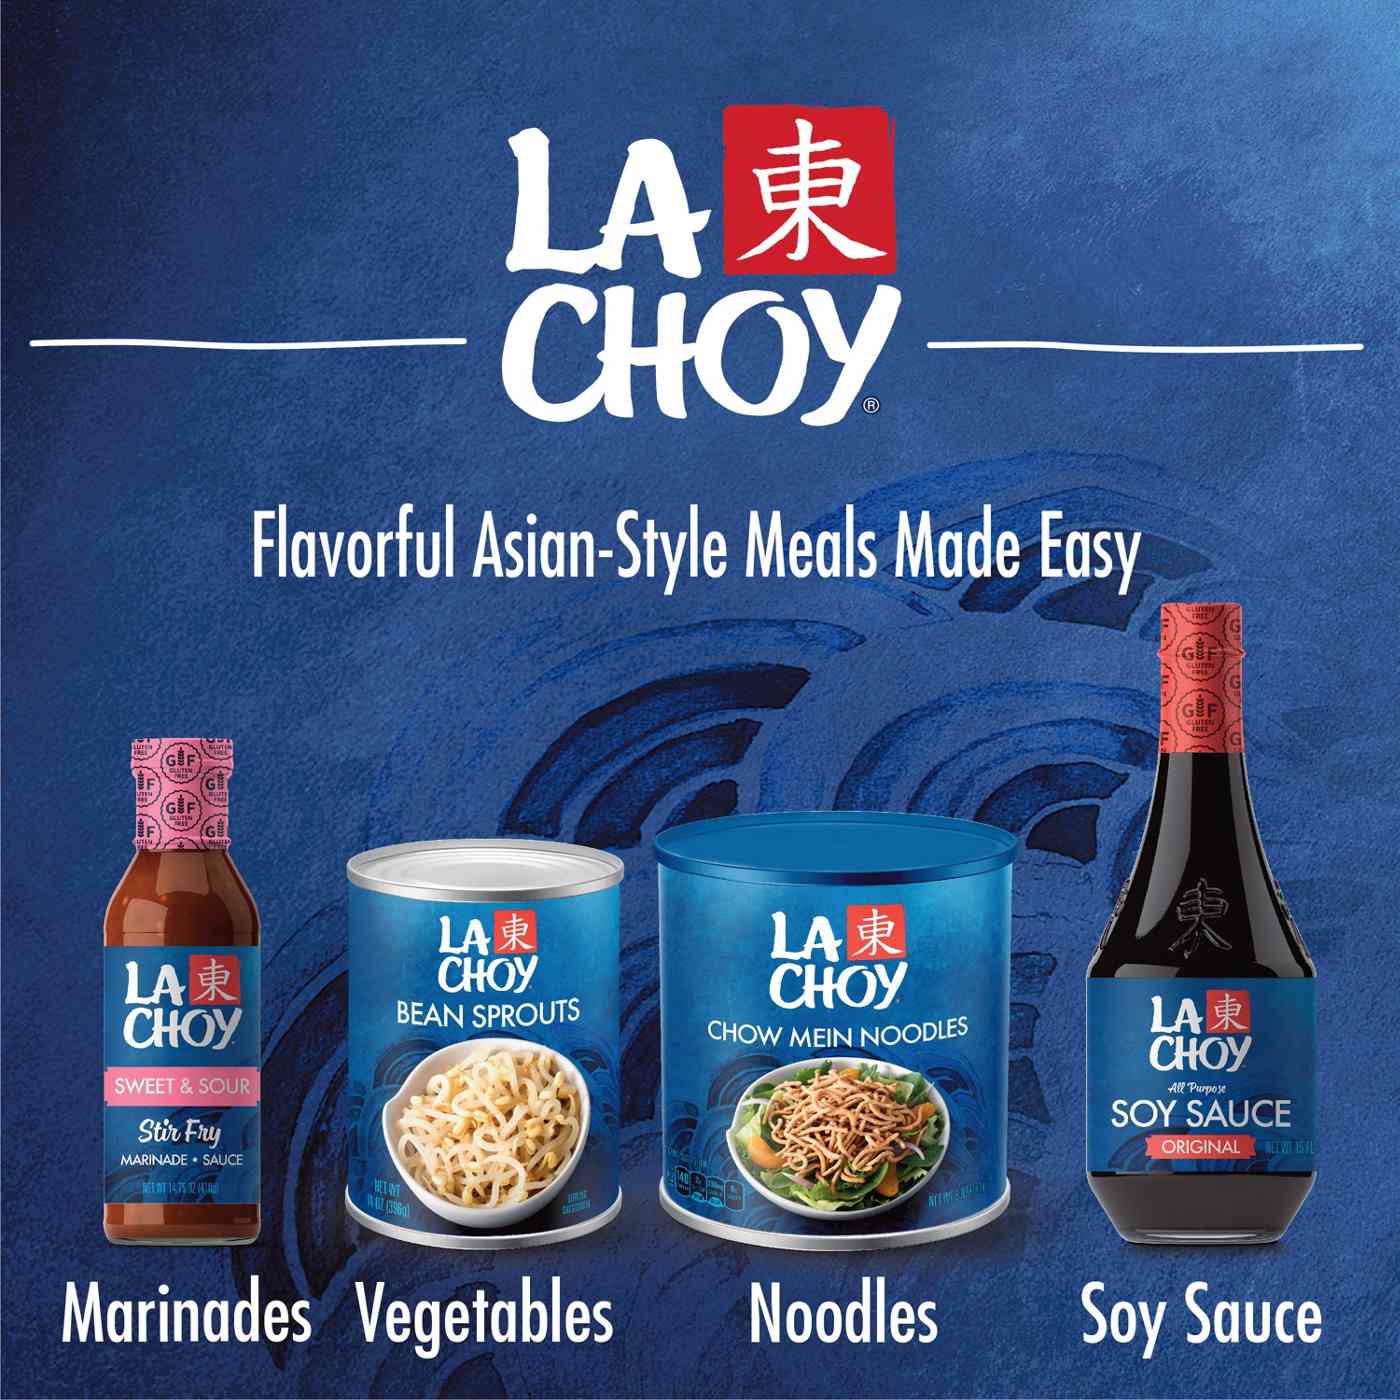 La Choy Chow Mein Noodles; image 2 of 5